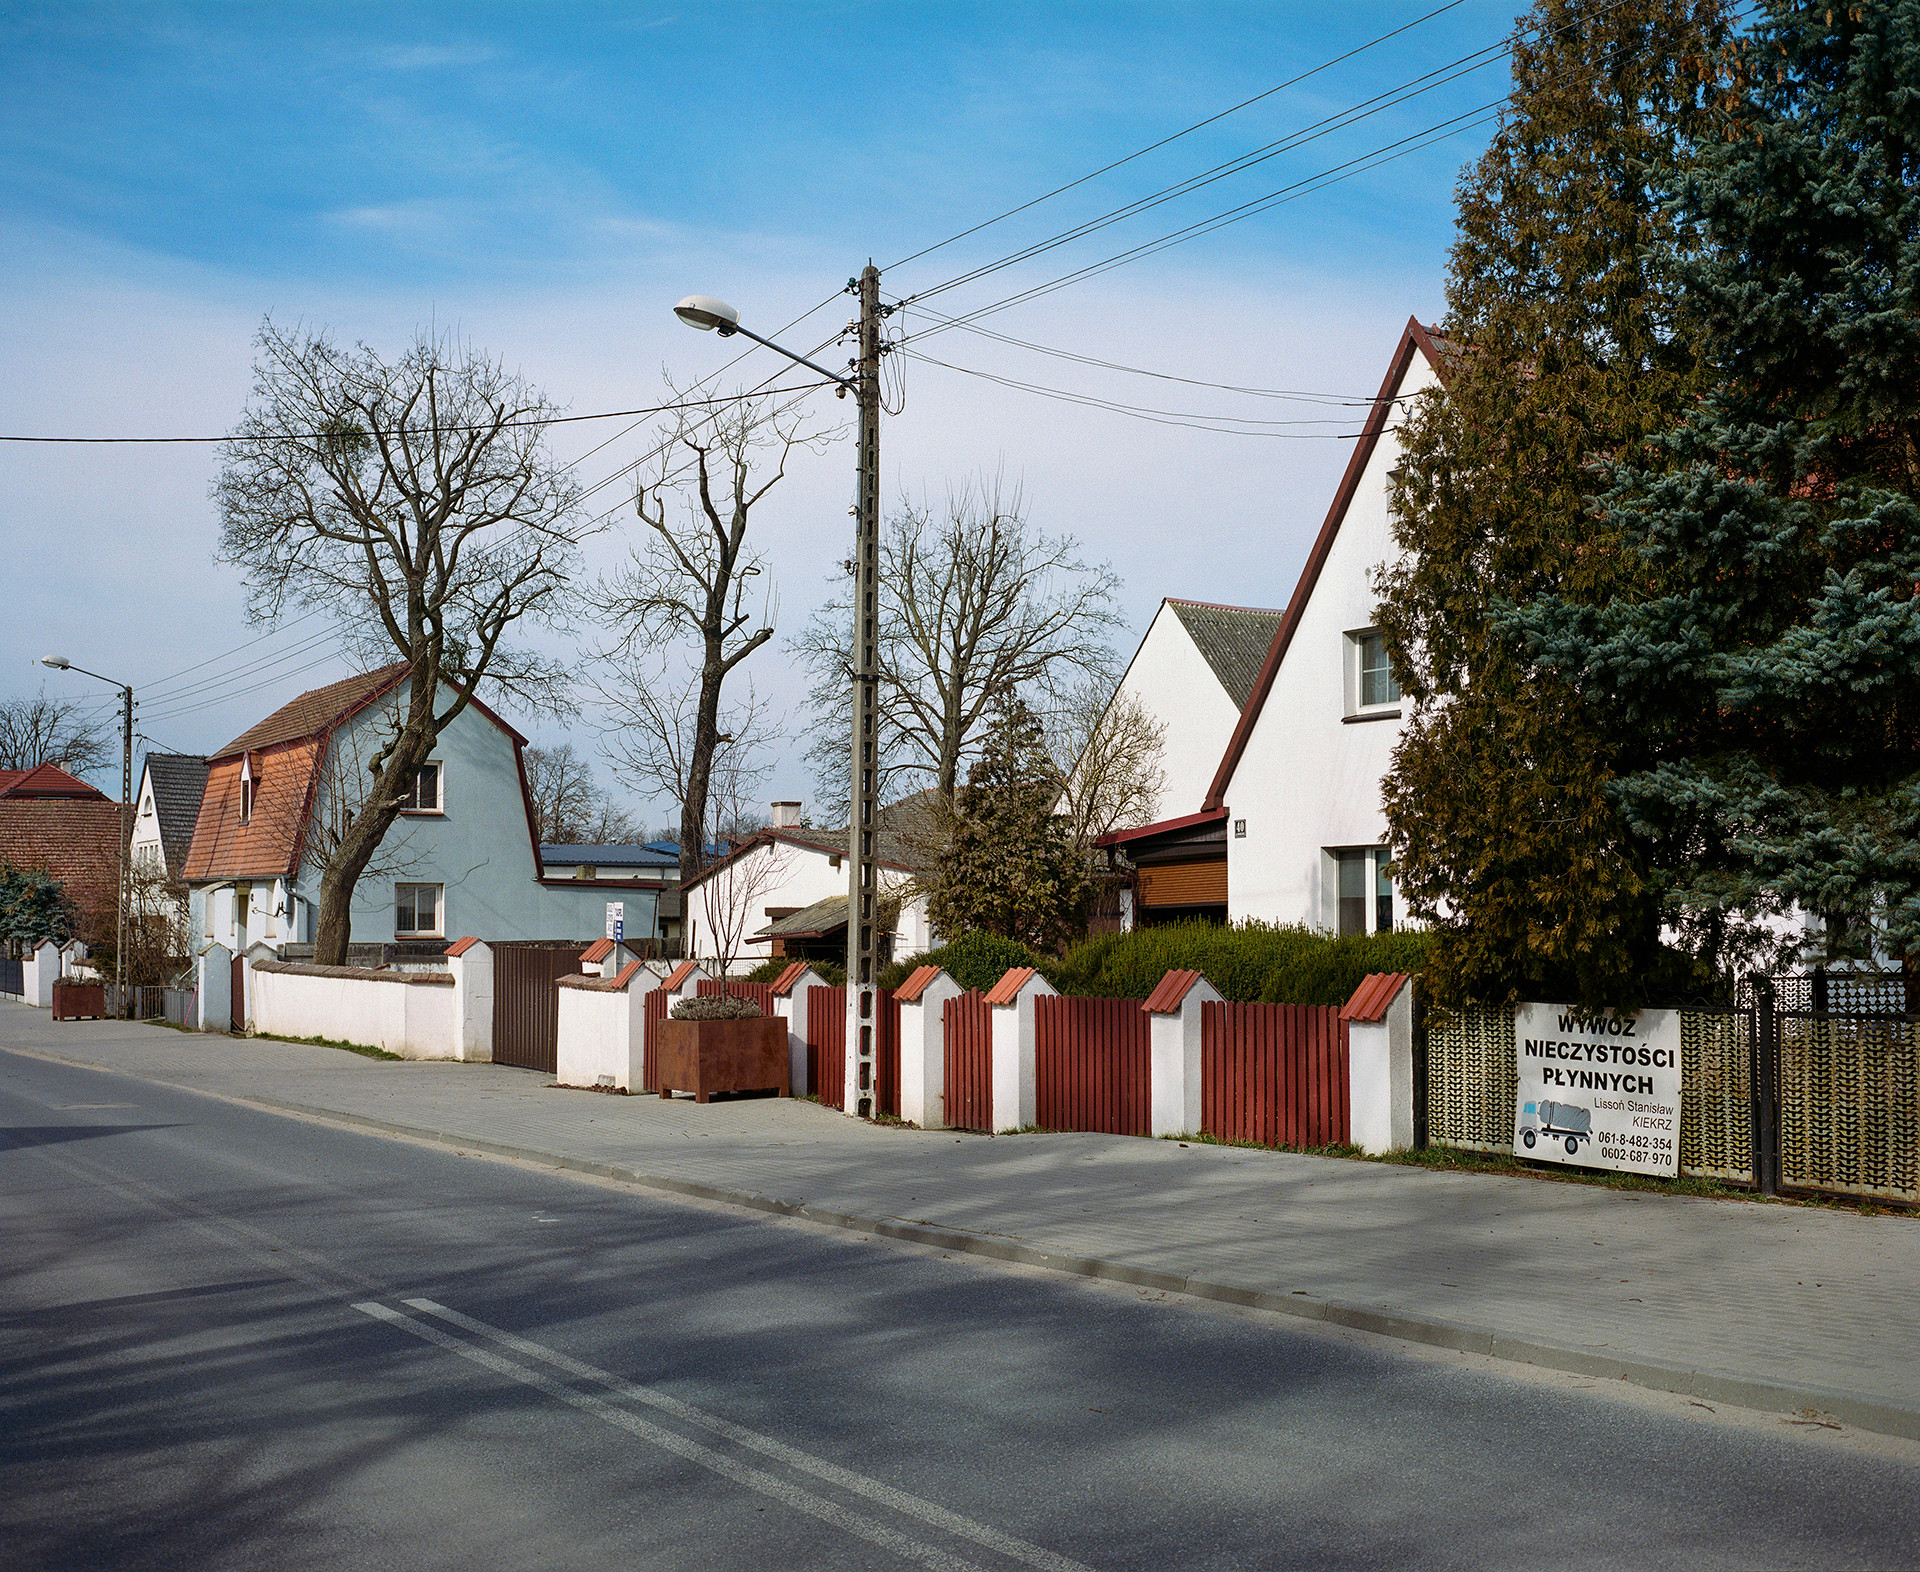 Голенчево, в прошлом образцовое немецкое село Голенхофен, Польша